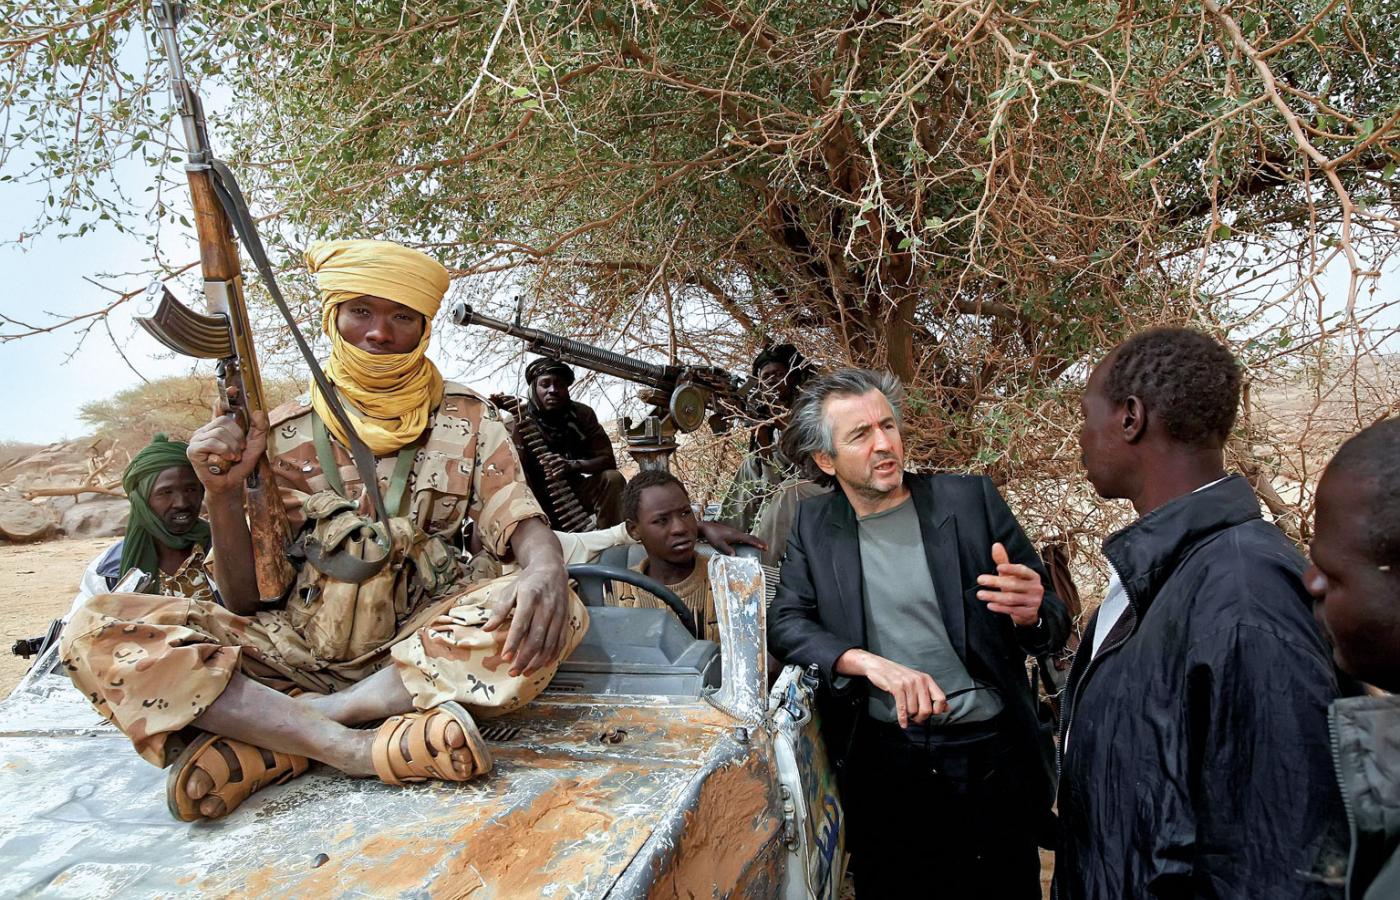 Popularność BHL to efekt jego reporterskich wypraw – jego relacje z miejsc ogarniętych konfliktem nadawały ton francuskiej opinii publicznej. Na zdjeciu: filozof wsród rebeliantów w Darfurze, marzec 2007 r.